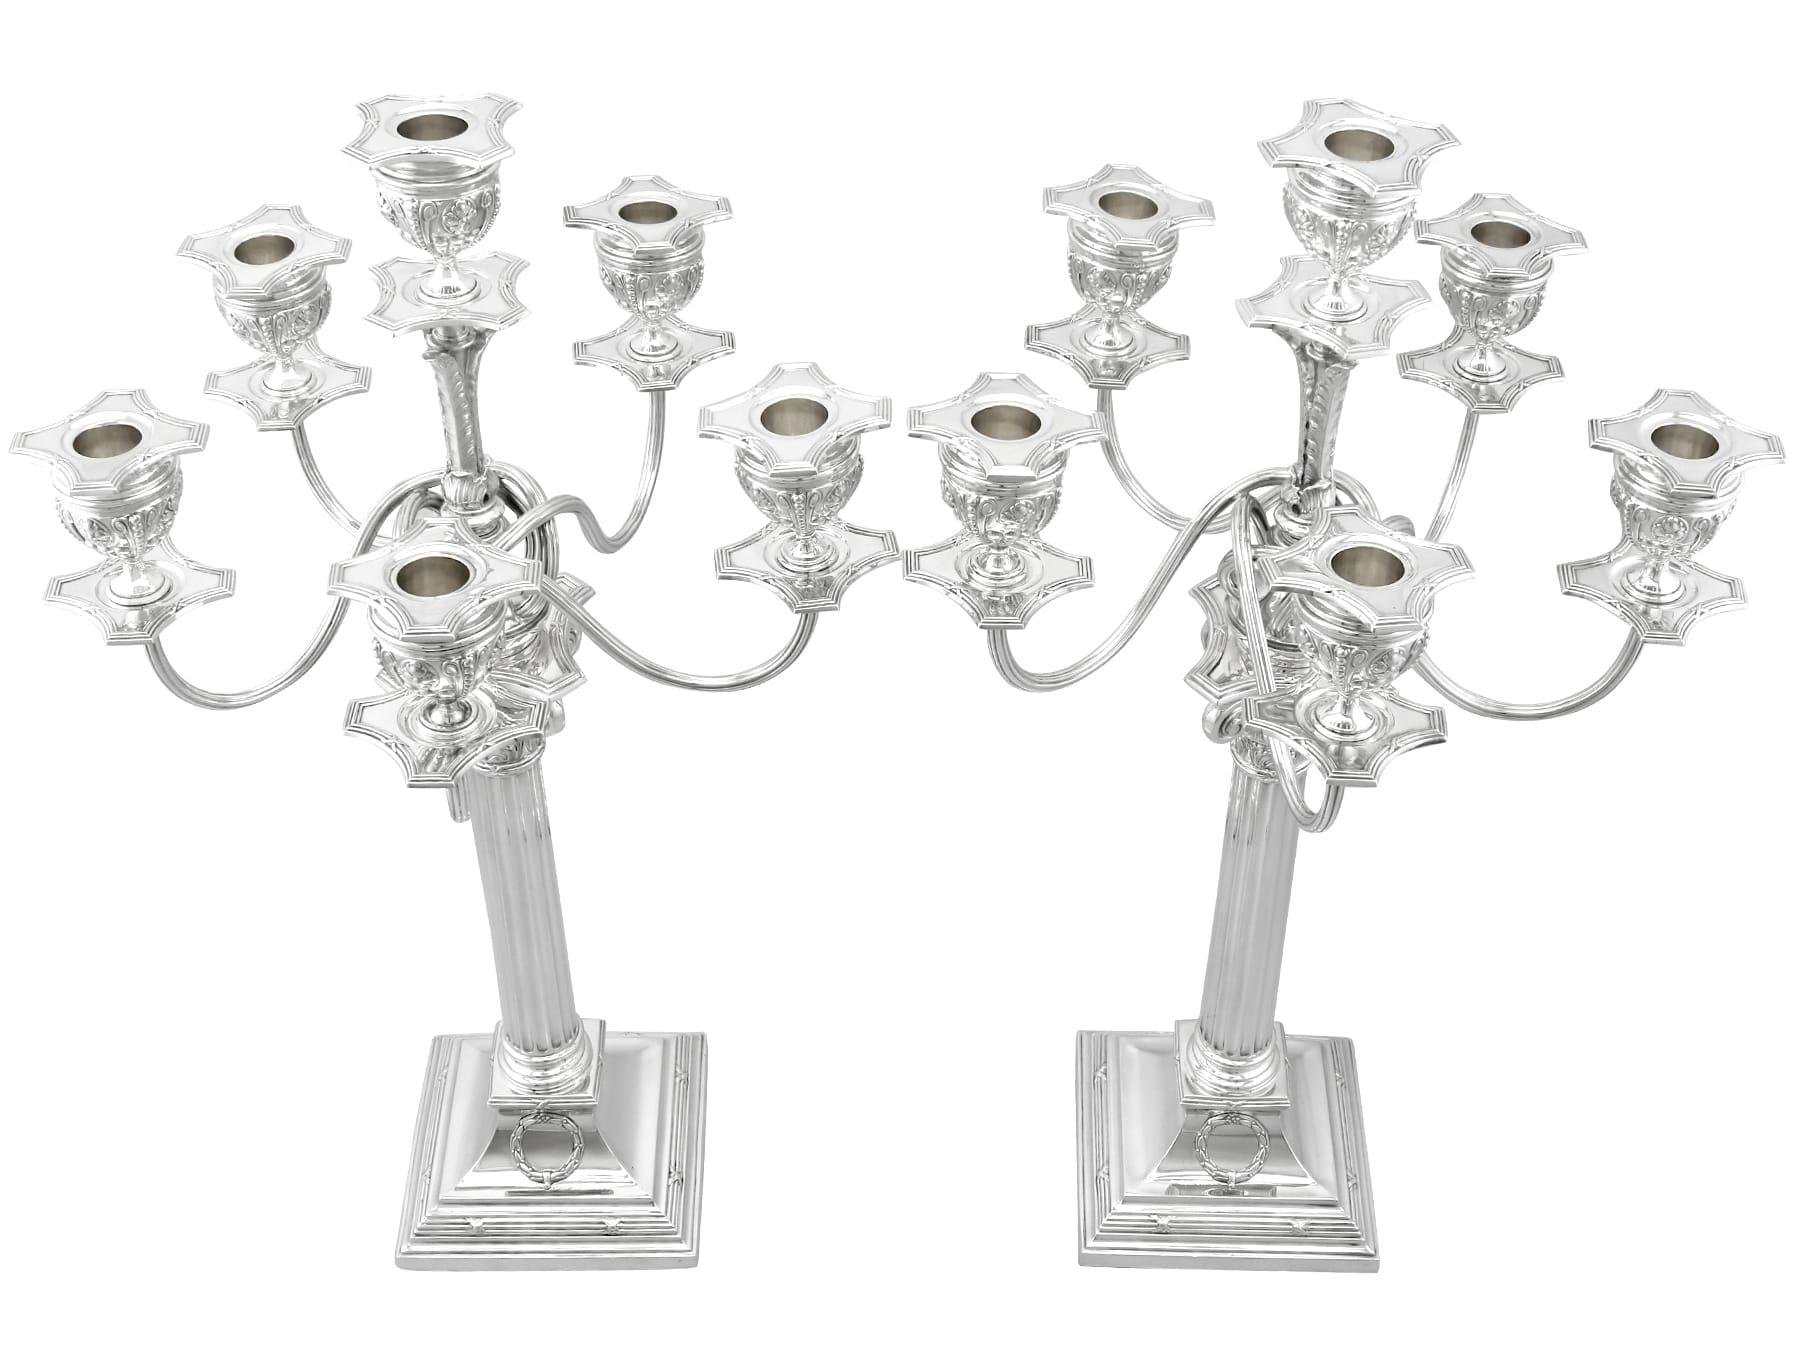 Un'eccezionale, raffinata e imponente coppia di antichi candelabri a sei luci in argento 800 standard tedesco; un'aggiunta alla nostra collezione di argenteria ornamentale
Questi eccezionali candelabri d'argento tedeschi antichi hanno una forma